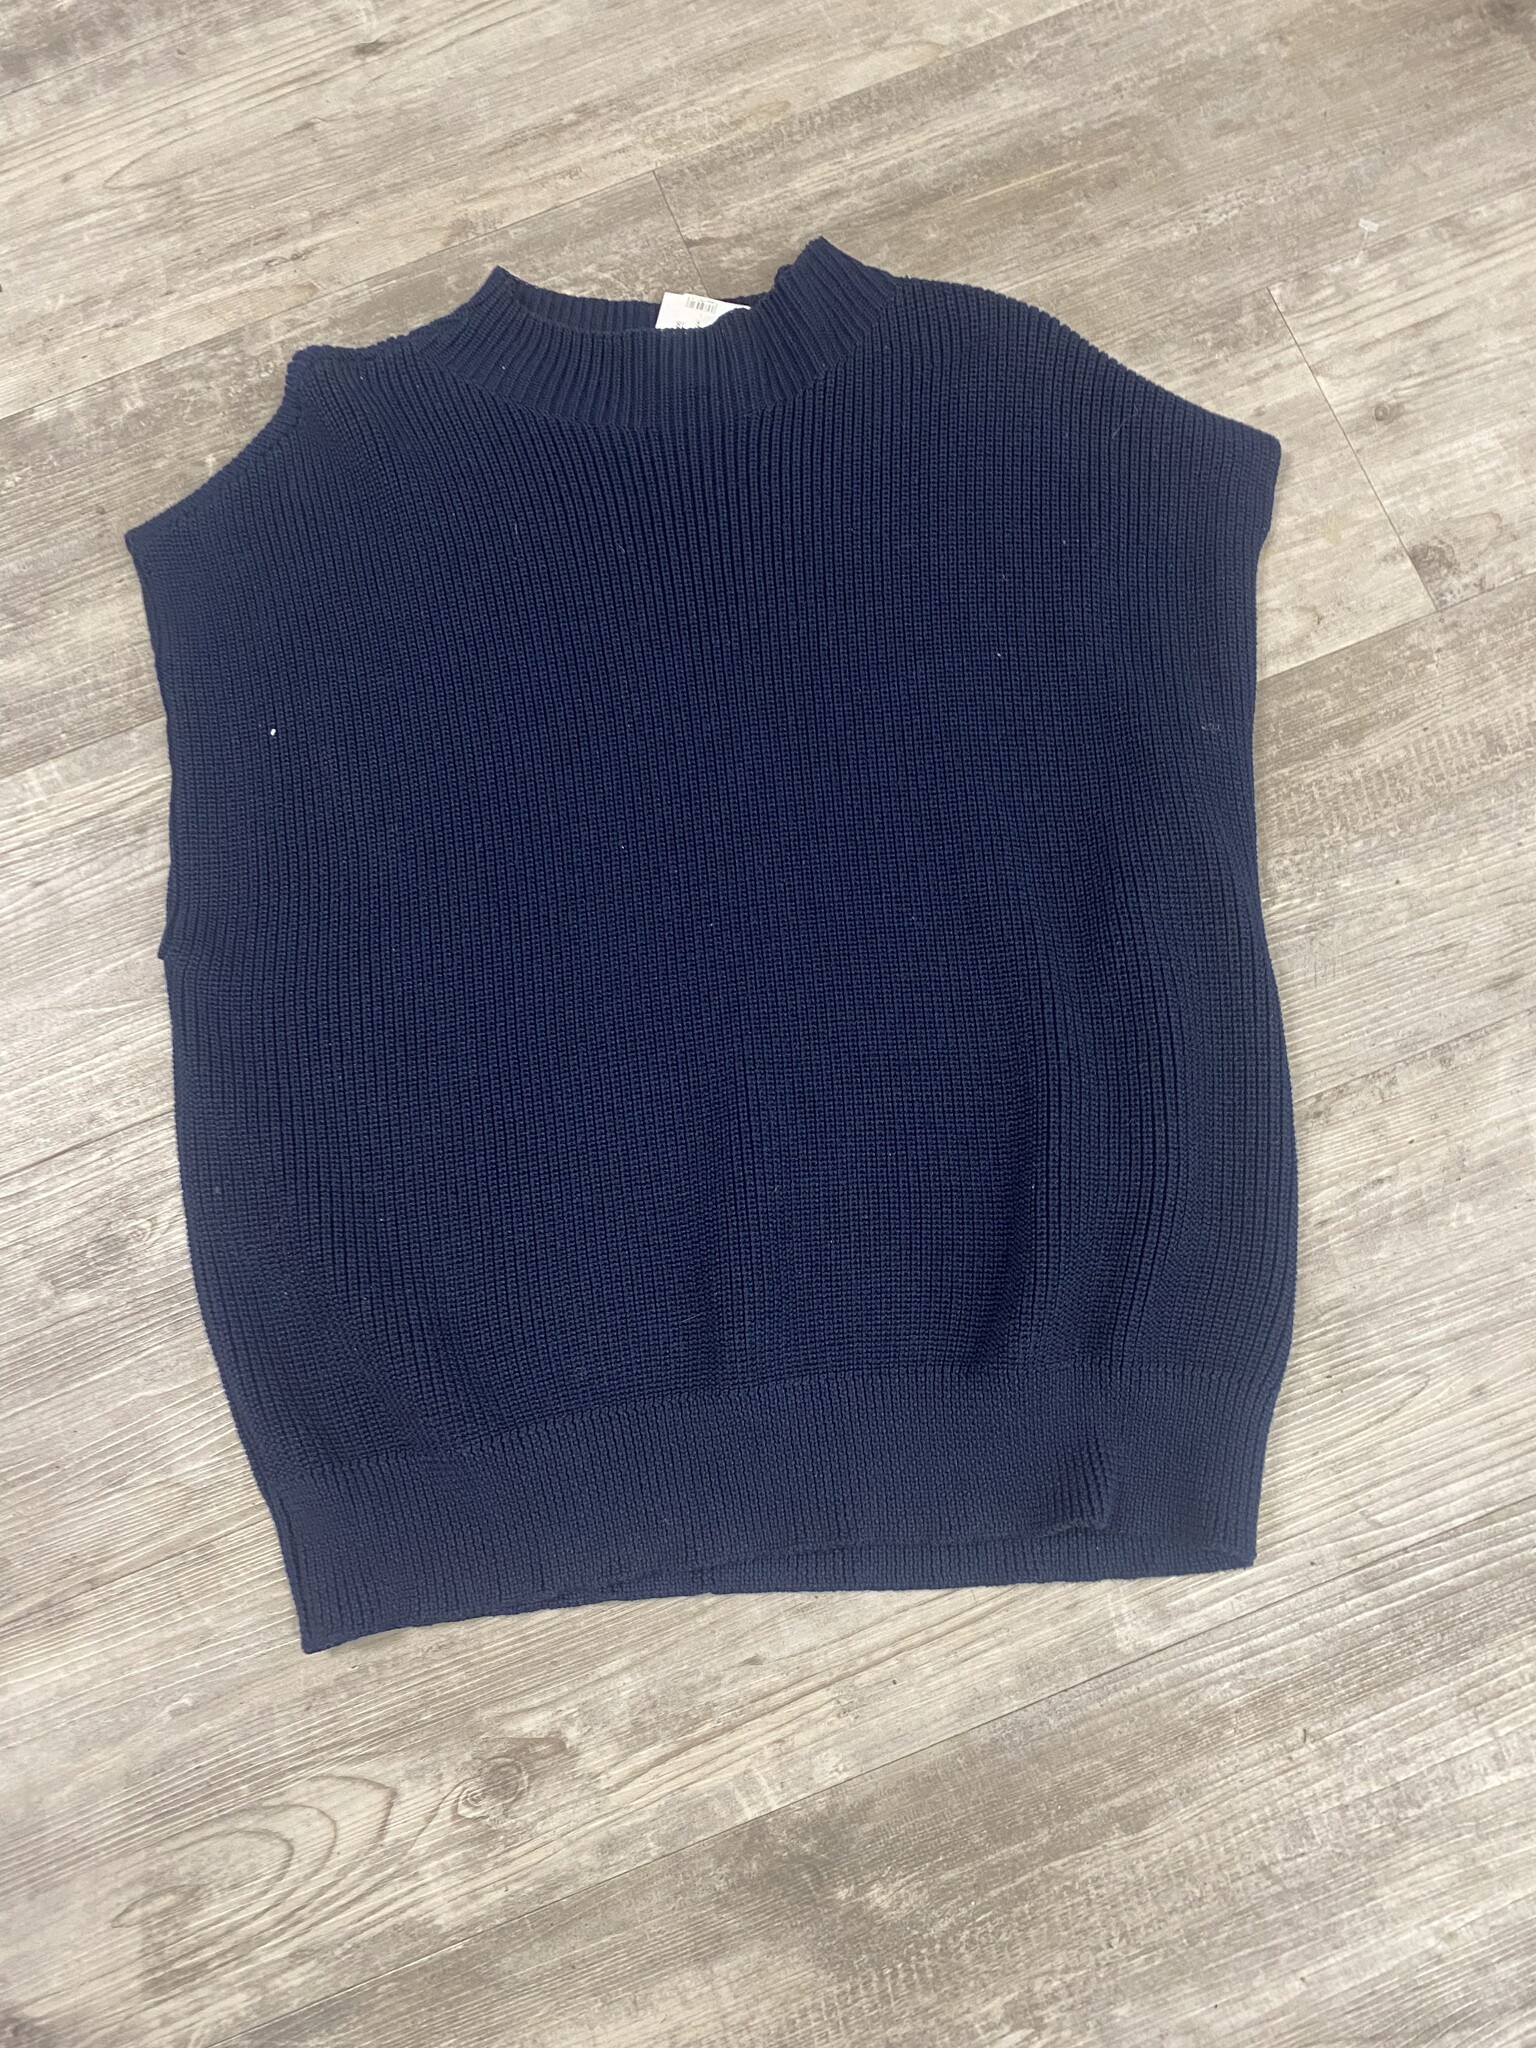 Navy Knit Sweater Vest  - Size 46